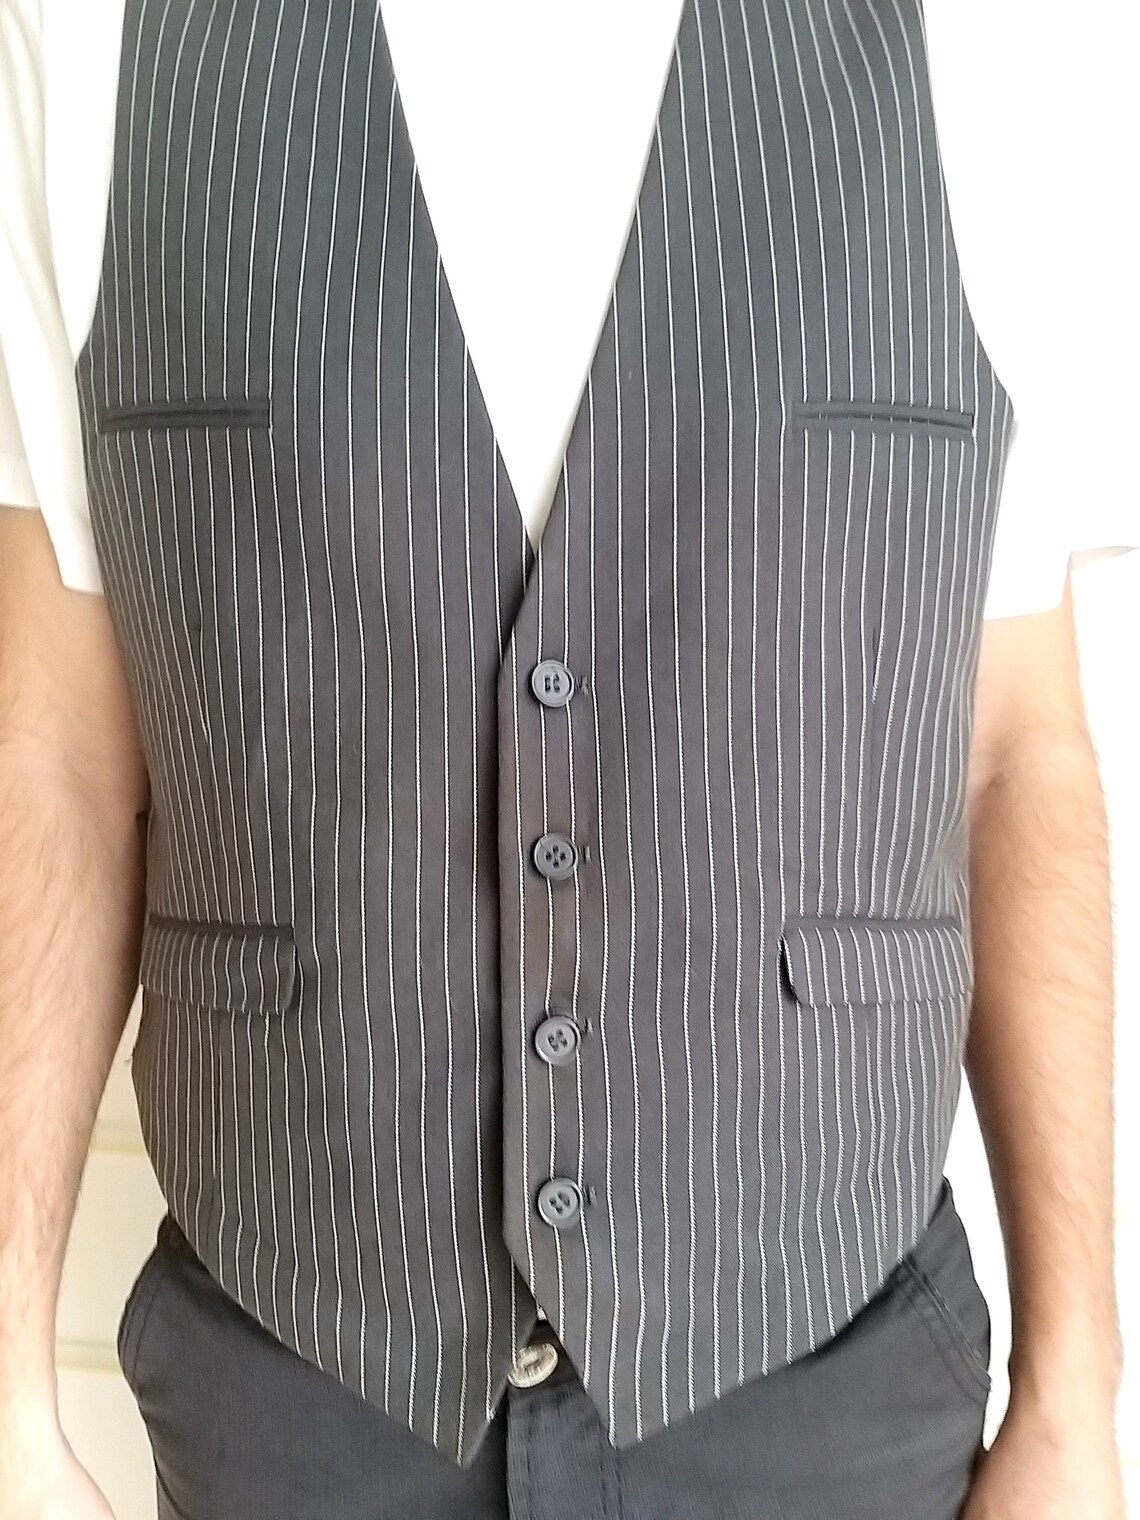 Father gift vest mens striped vest wedding Vest Groom Vest | Etsy